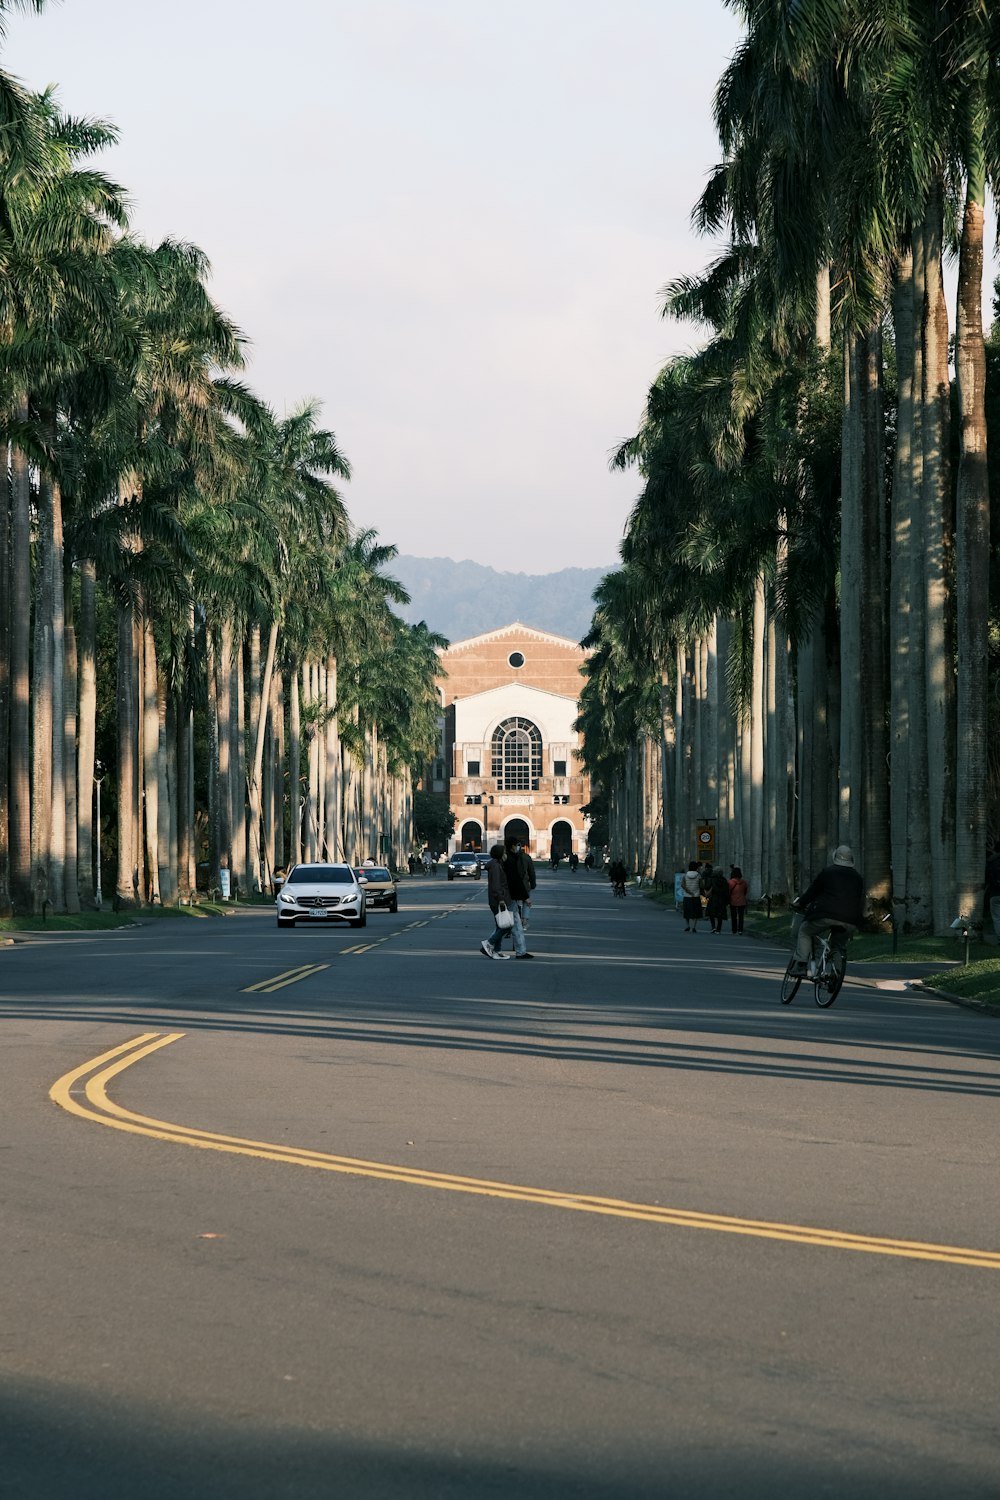 Una persona montando en bicicleta por una calle junto a palmeras